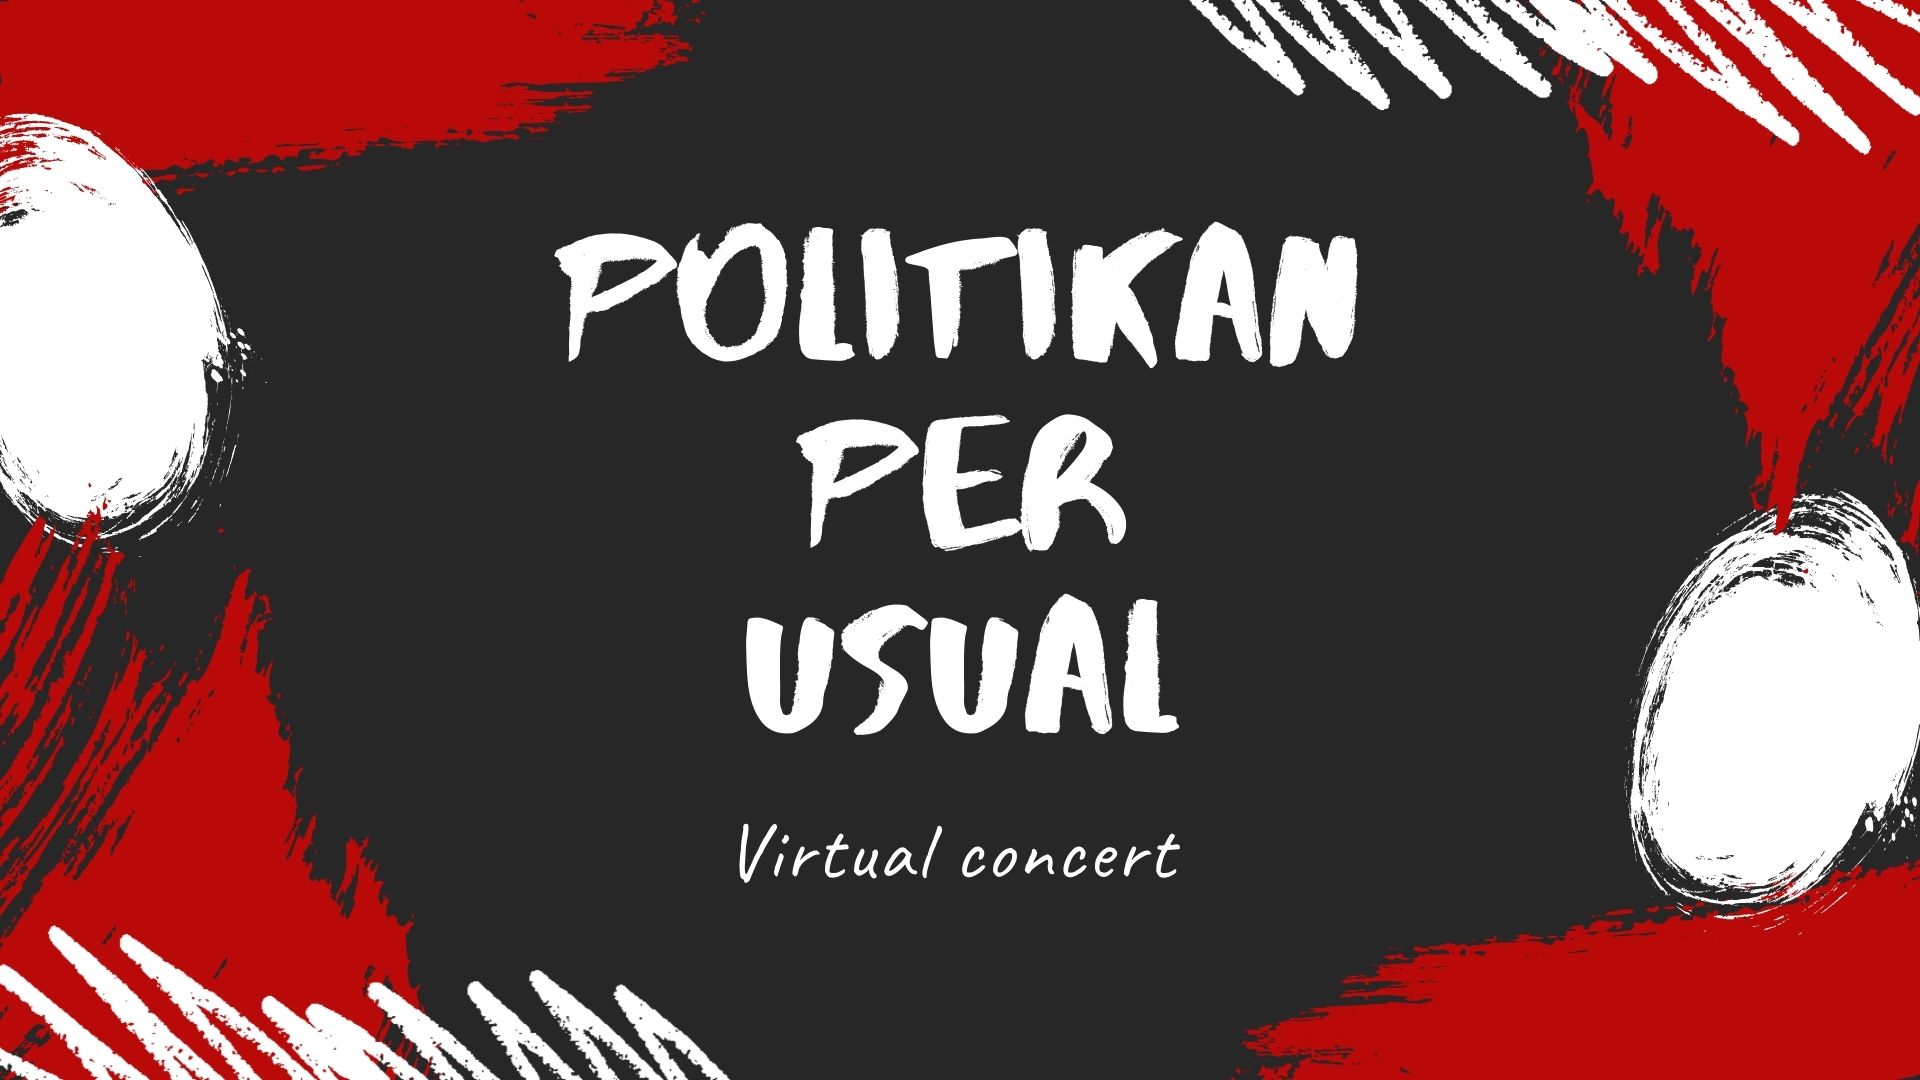 PolitiKan Per Usual “Virtual Concert’